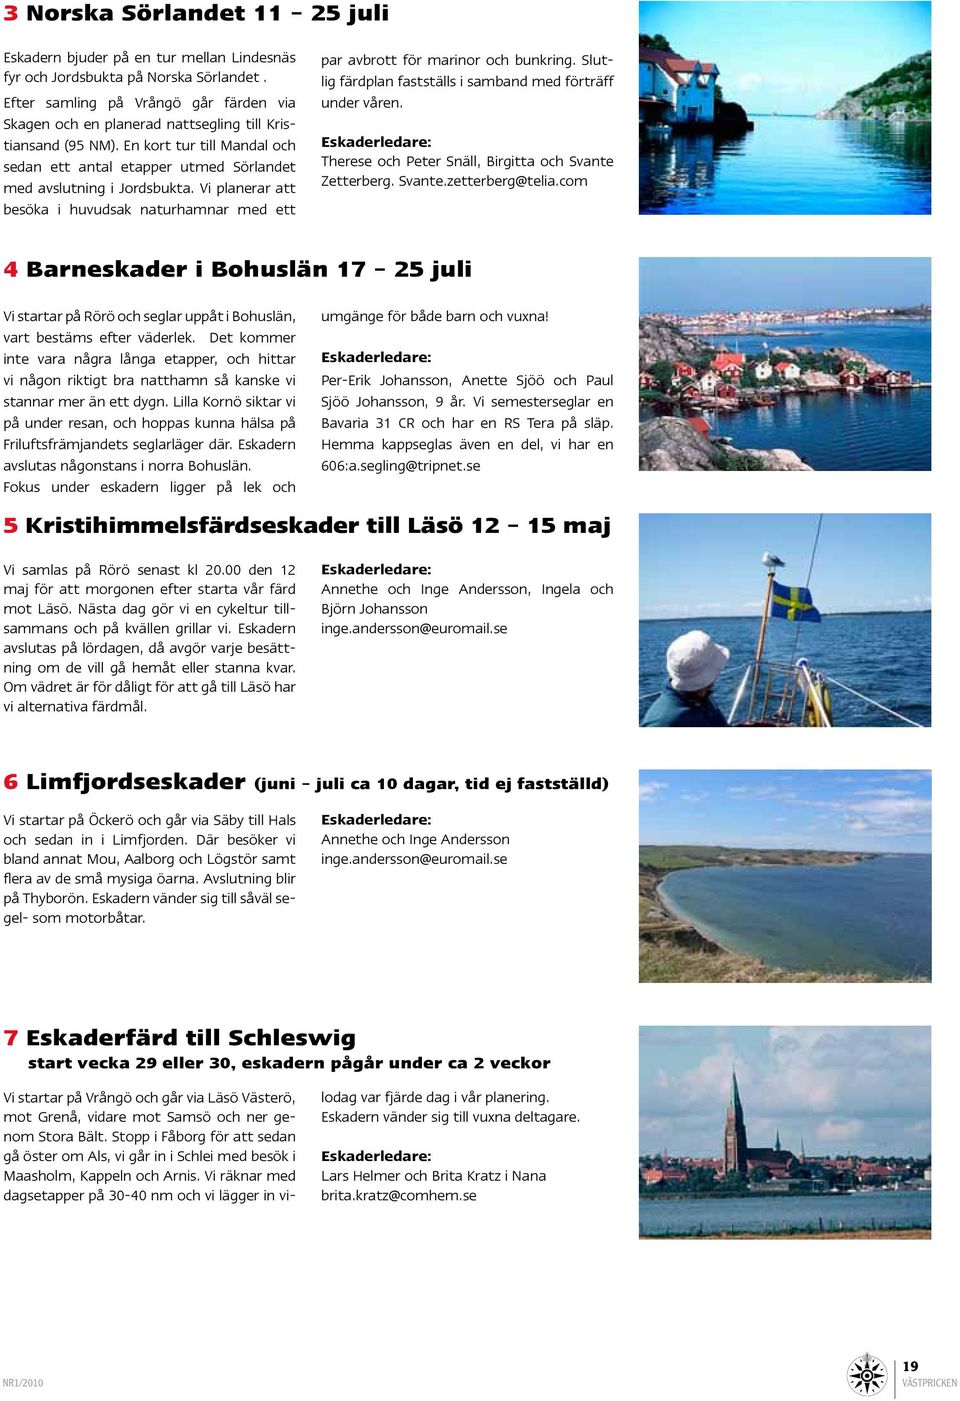 Vi planerar att besöka i huvudsak naturhamnar med ett Vi startar på Vrångö och går via Läsö Västerö, mot Grenå, vidare mot Samsö och ner genom Stora Bält.